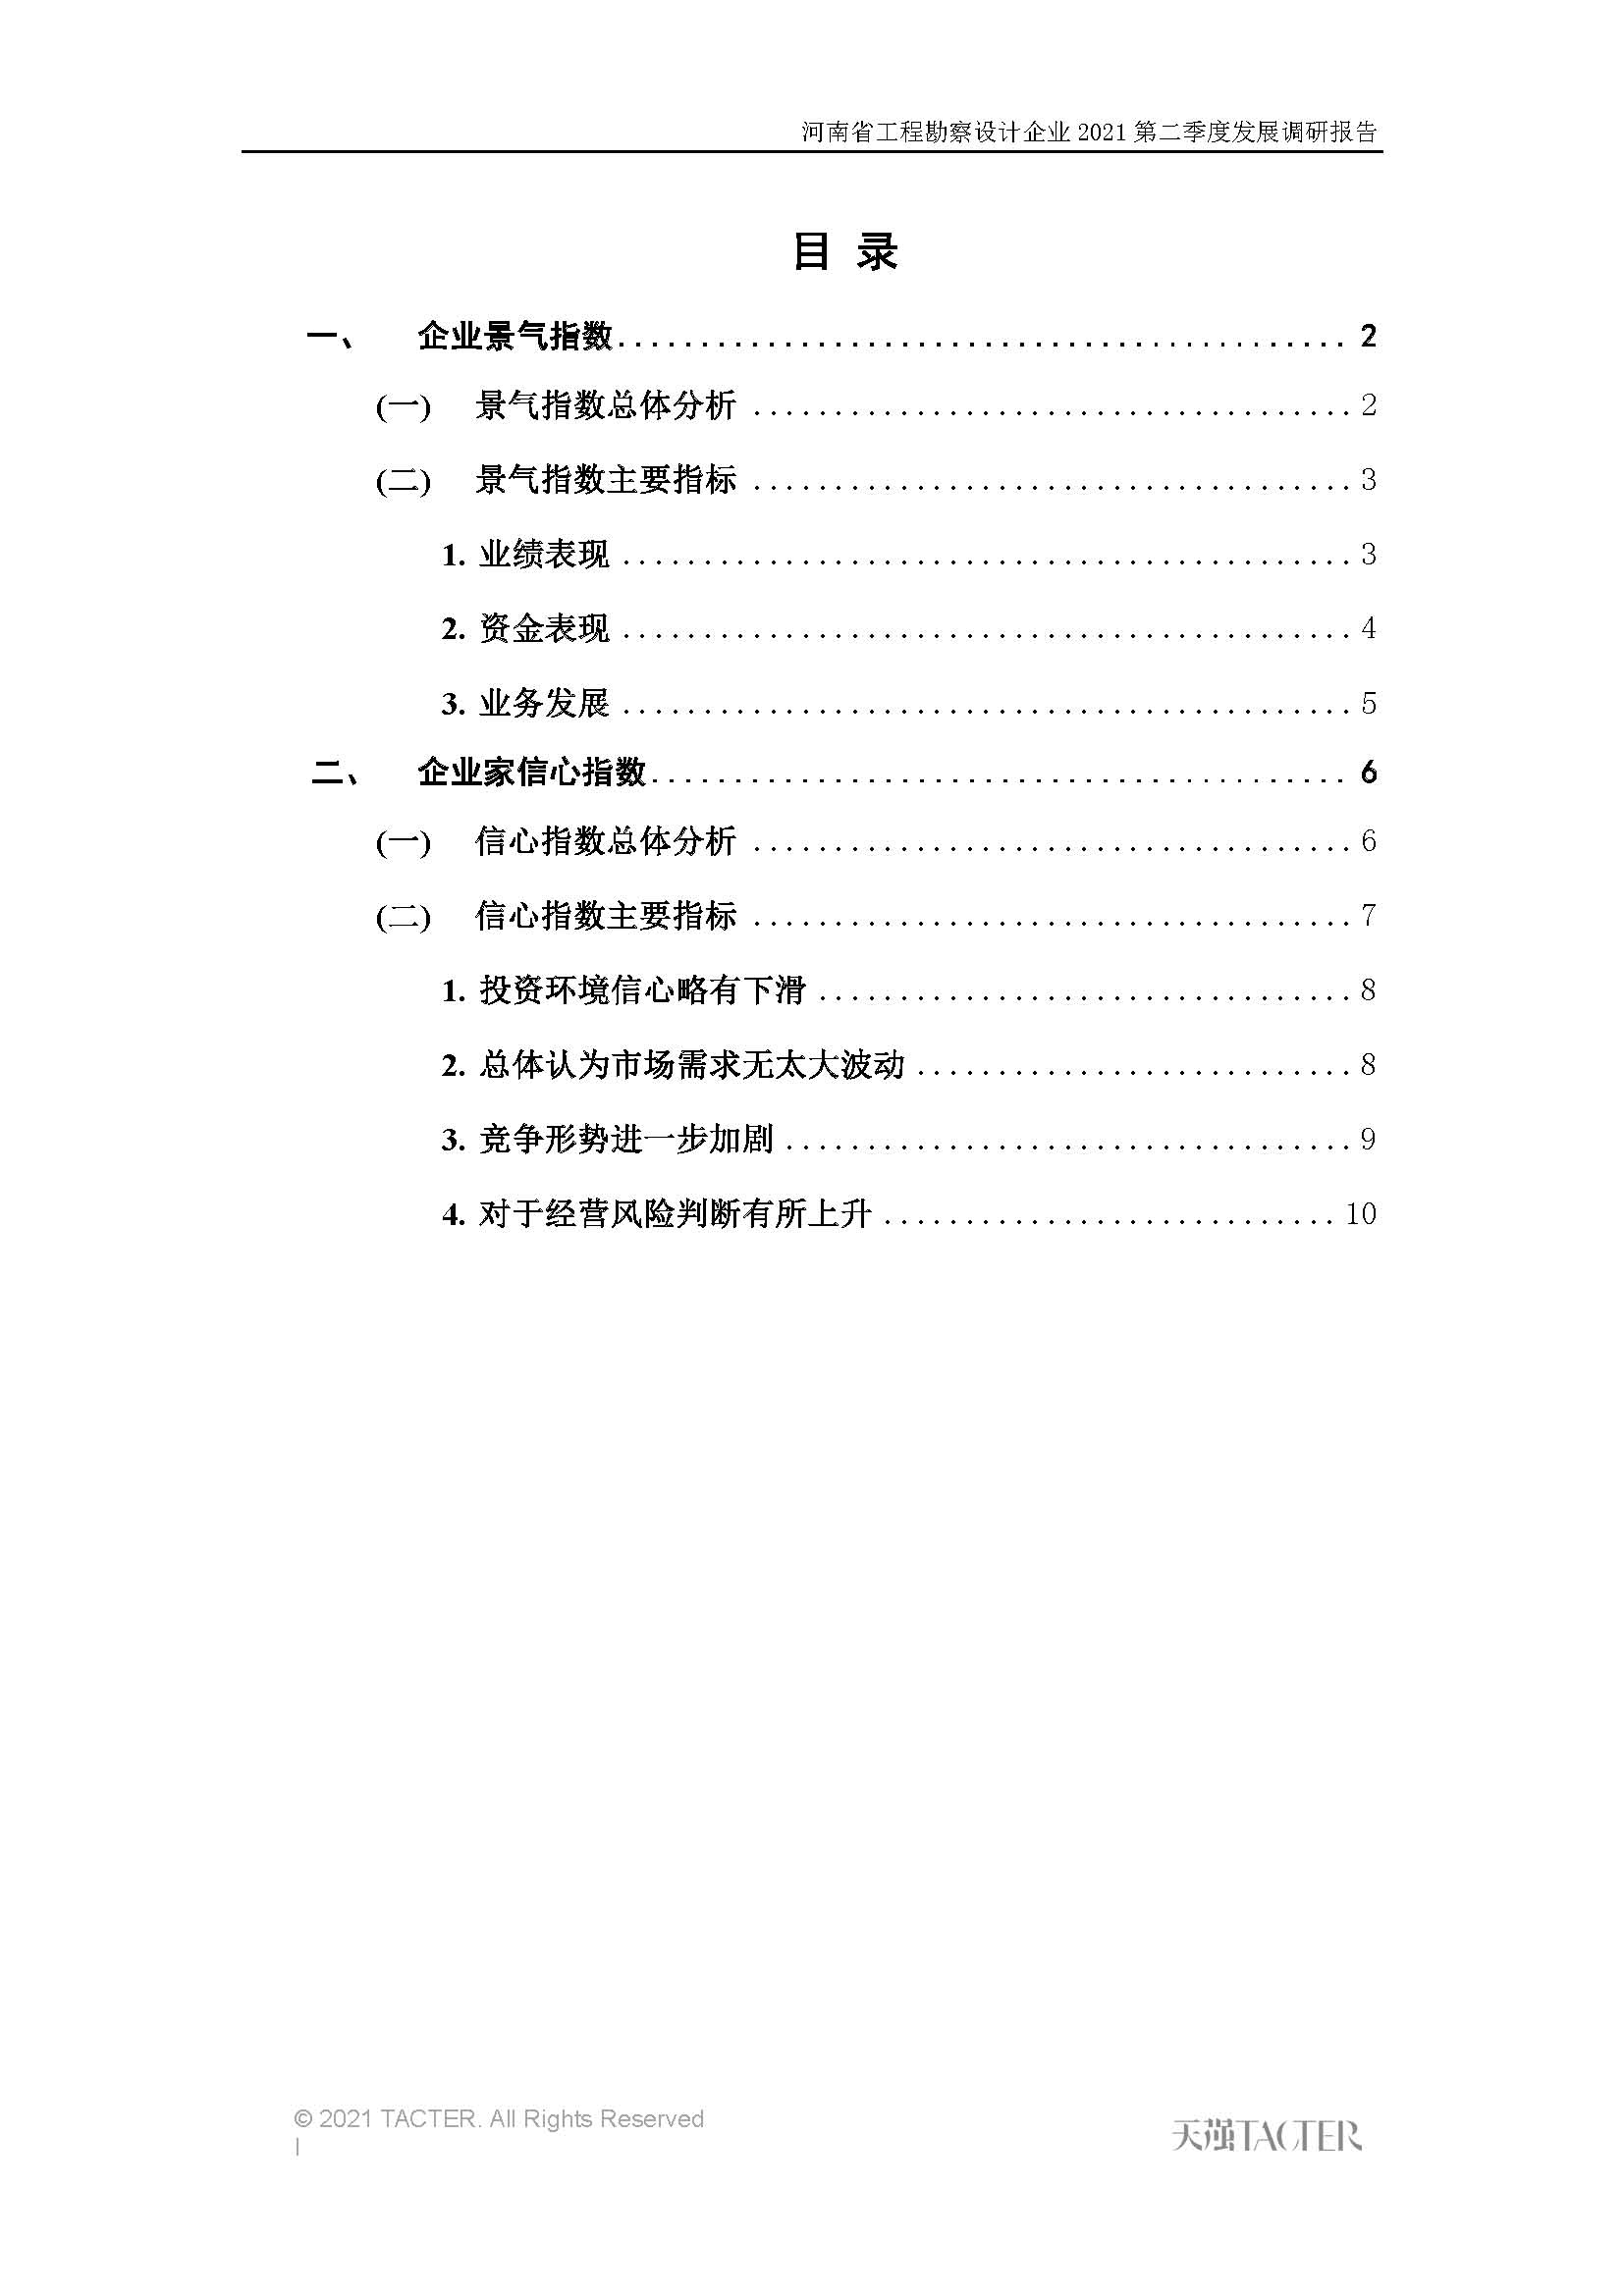 河南省工程勘察设计企业2021第二季度发展调研报告-公开版_页面_02.jpg